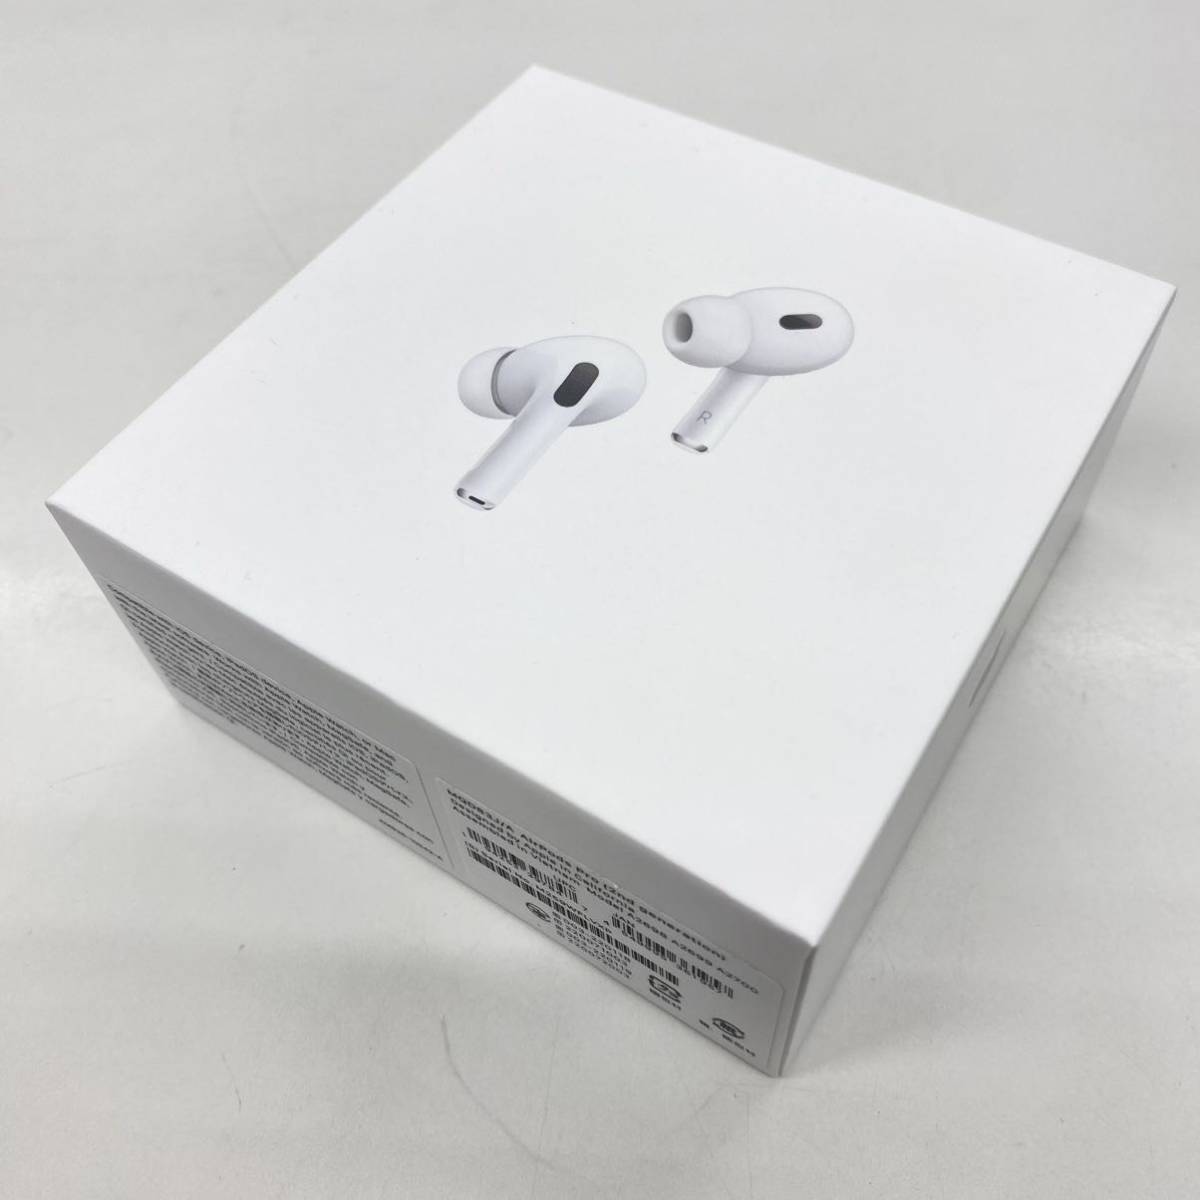 未開封品】 Apple アップルAirPods Pro 2nd generation エアポッズプロ